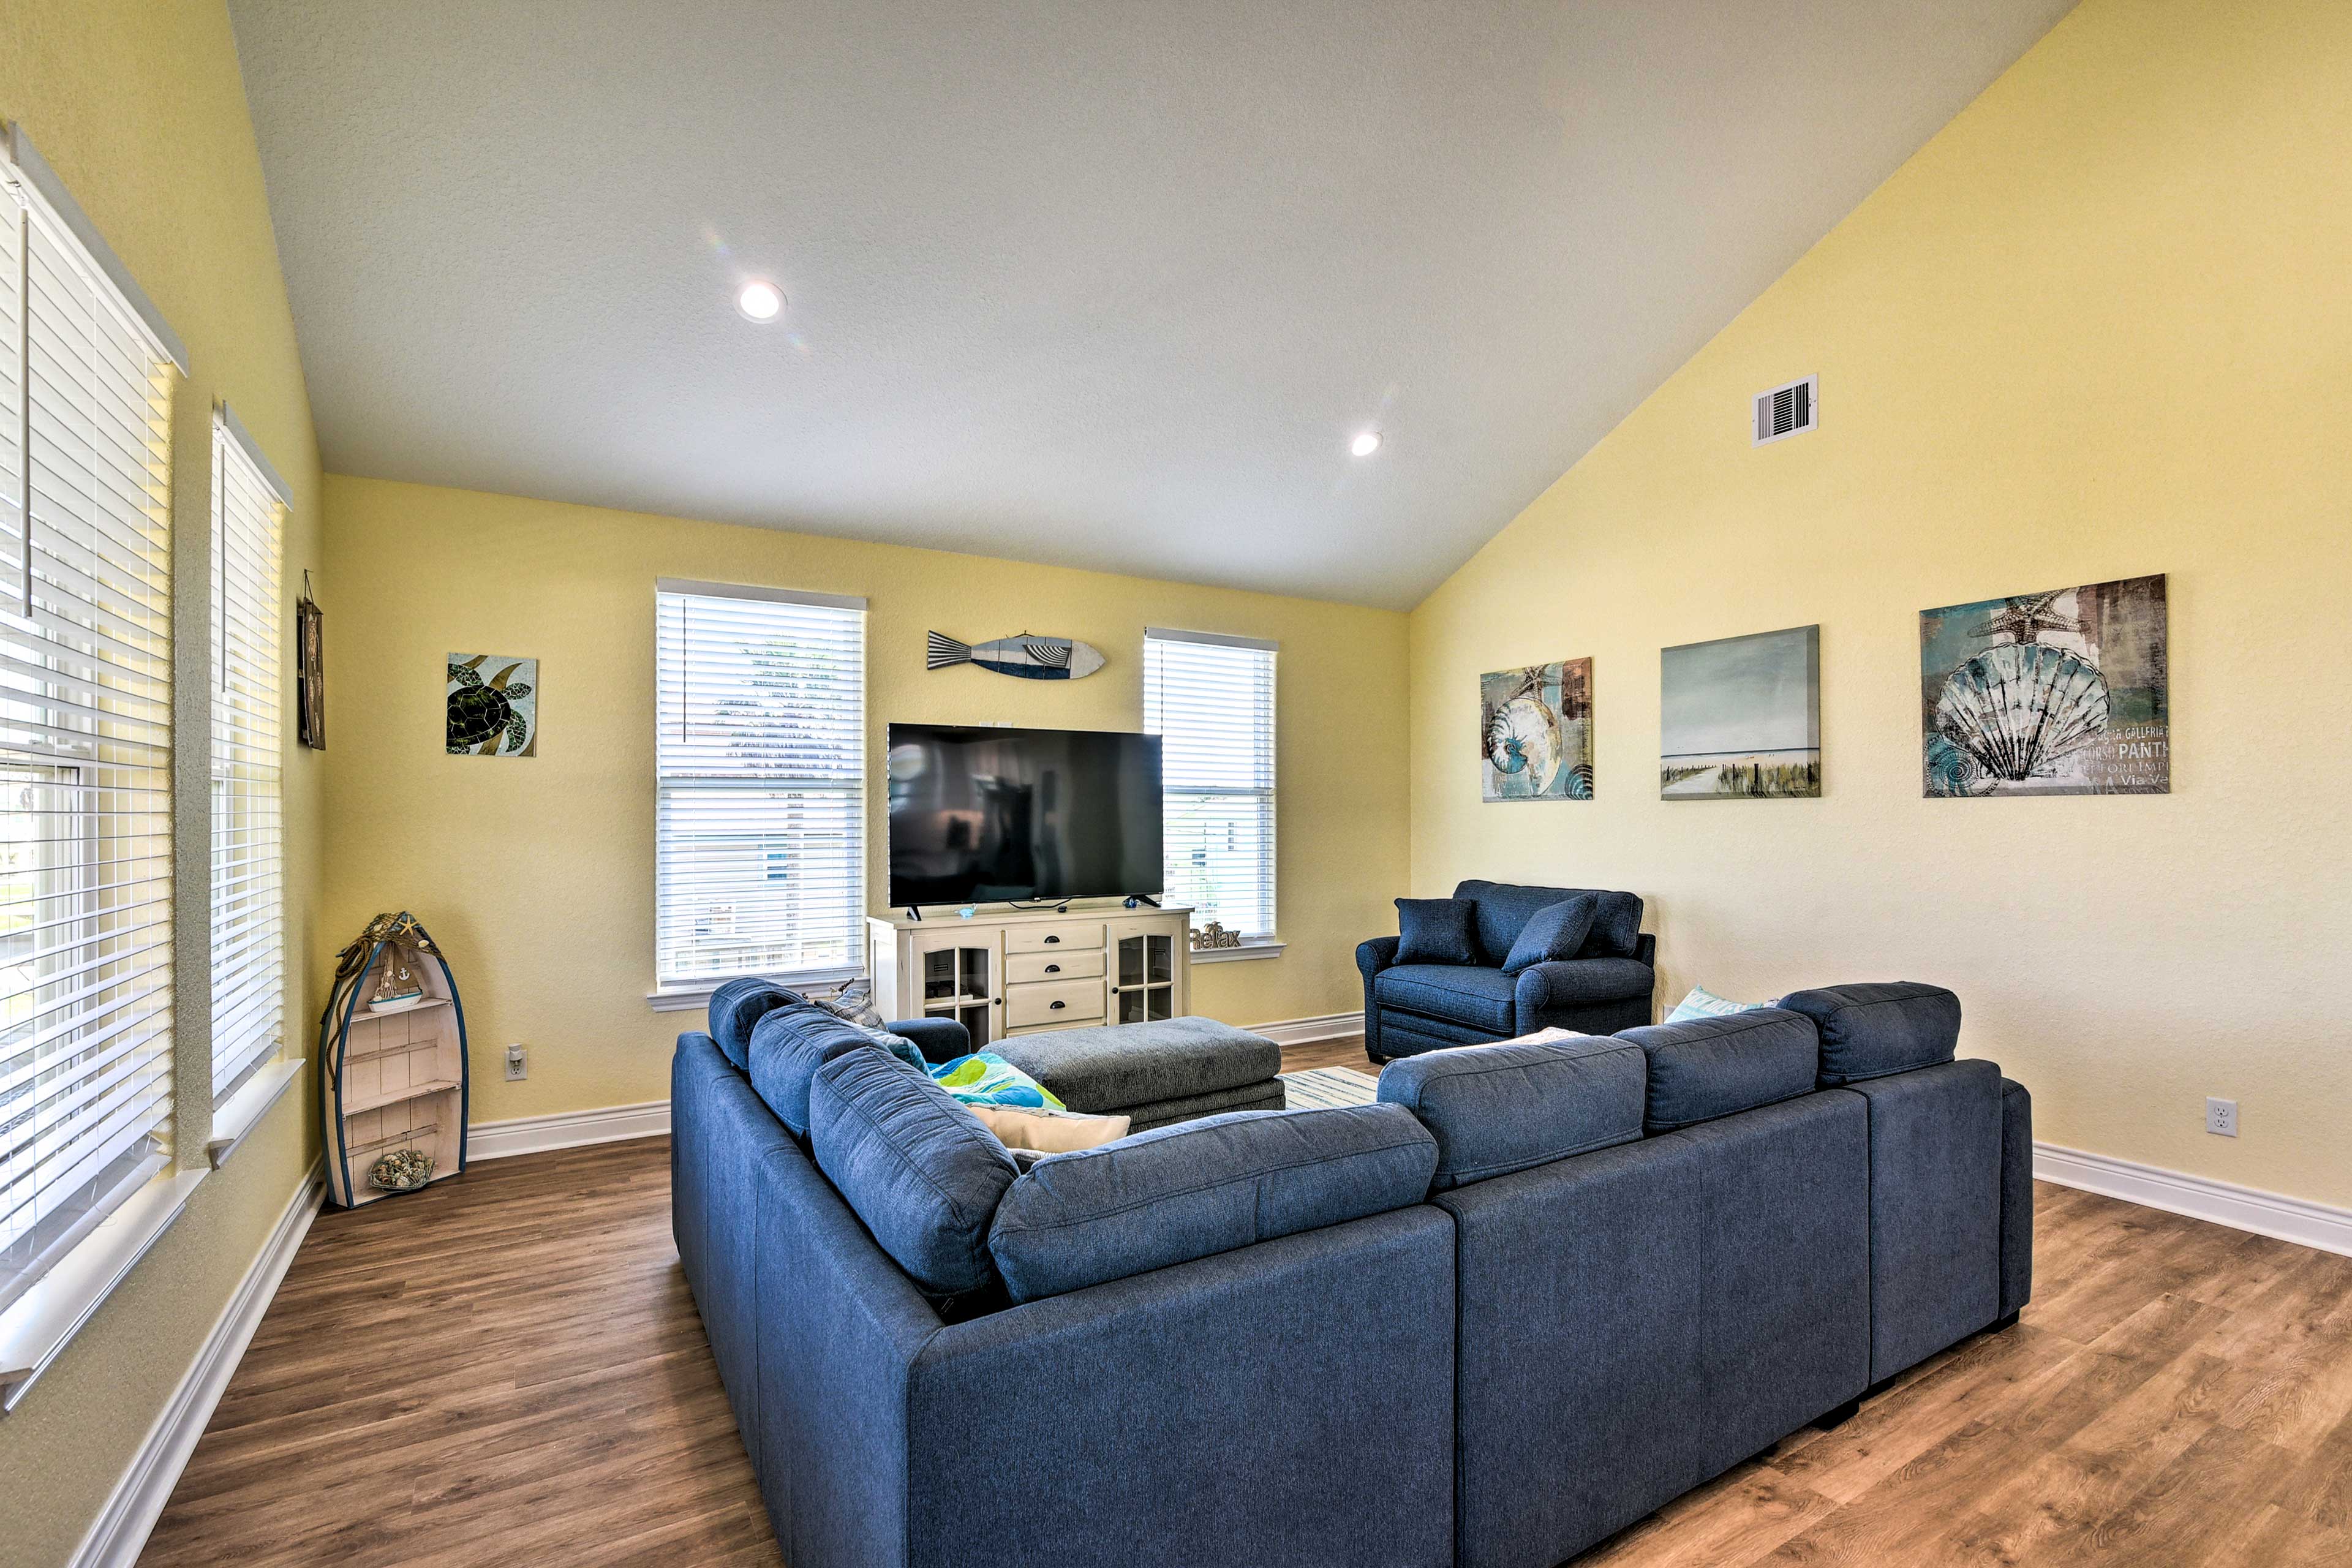 Living Room | Full Sleeper Sofa | Twin Sleeper Sofa | Main Floor | Smart TV